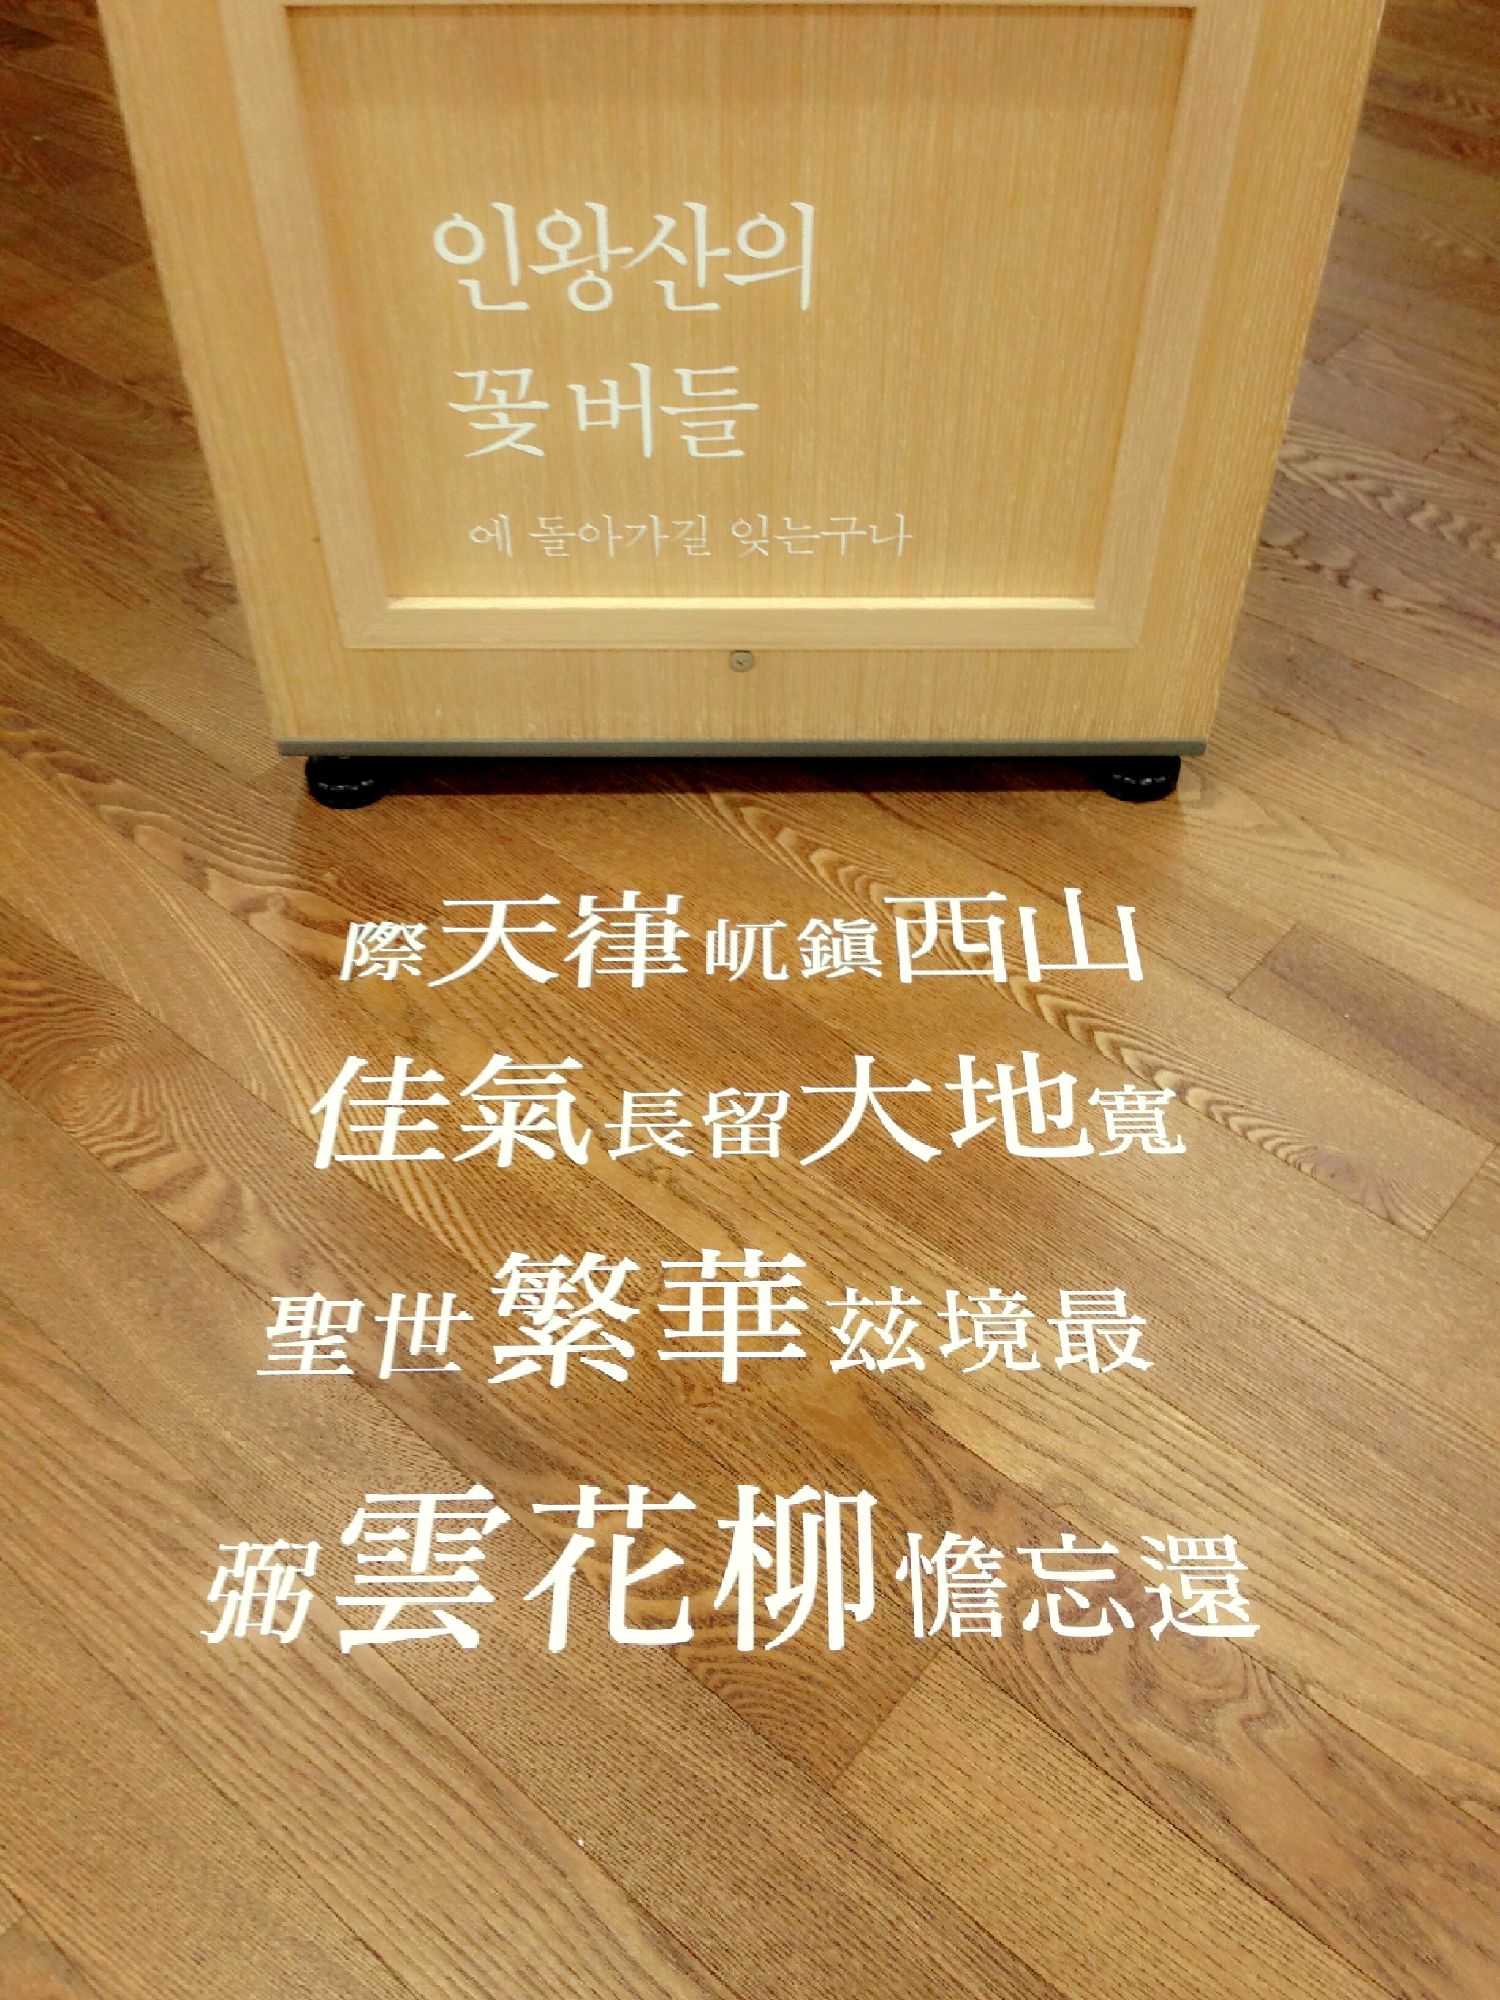 11月, 詩가 흐르는 서울도서관으로 오세요 포스터